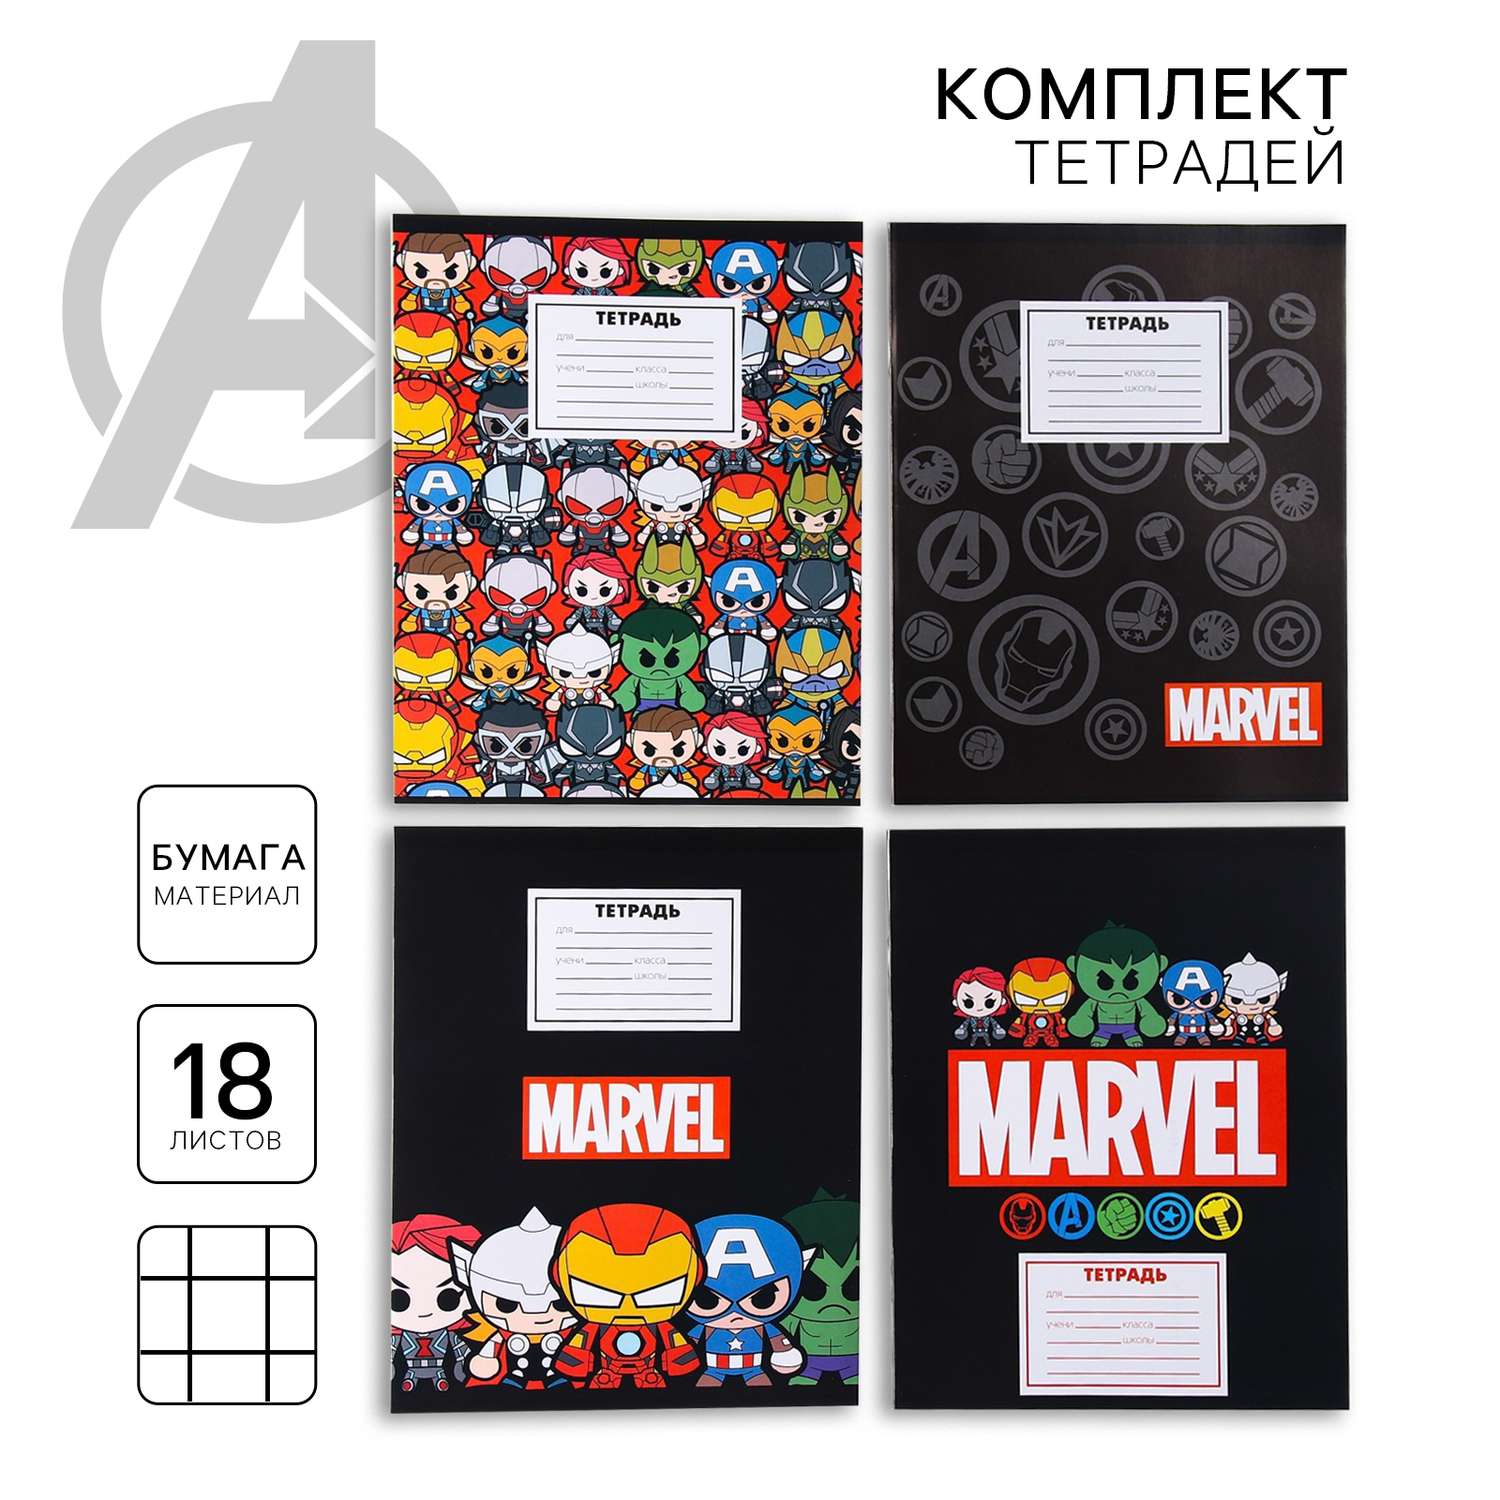 Комплект тетрадей Marvel из 20 шт «Мстители» 18 листов в клет обложка бум.мелов. - фото 2